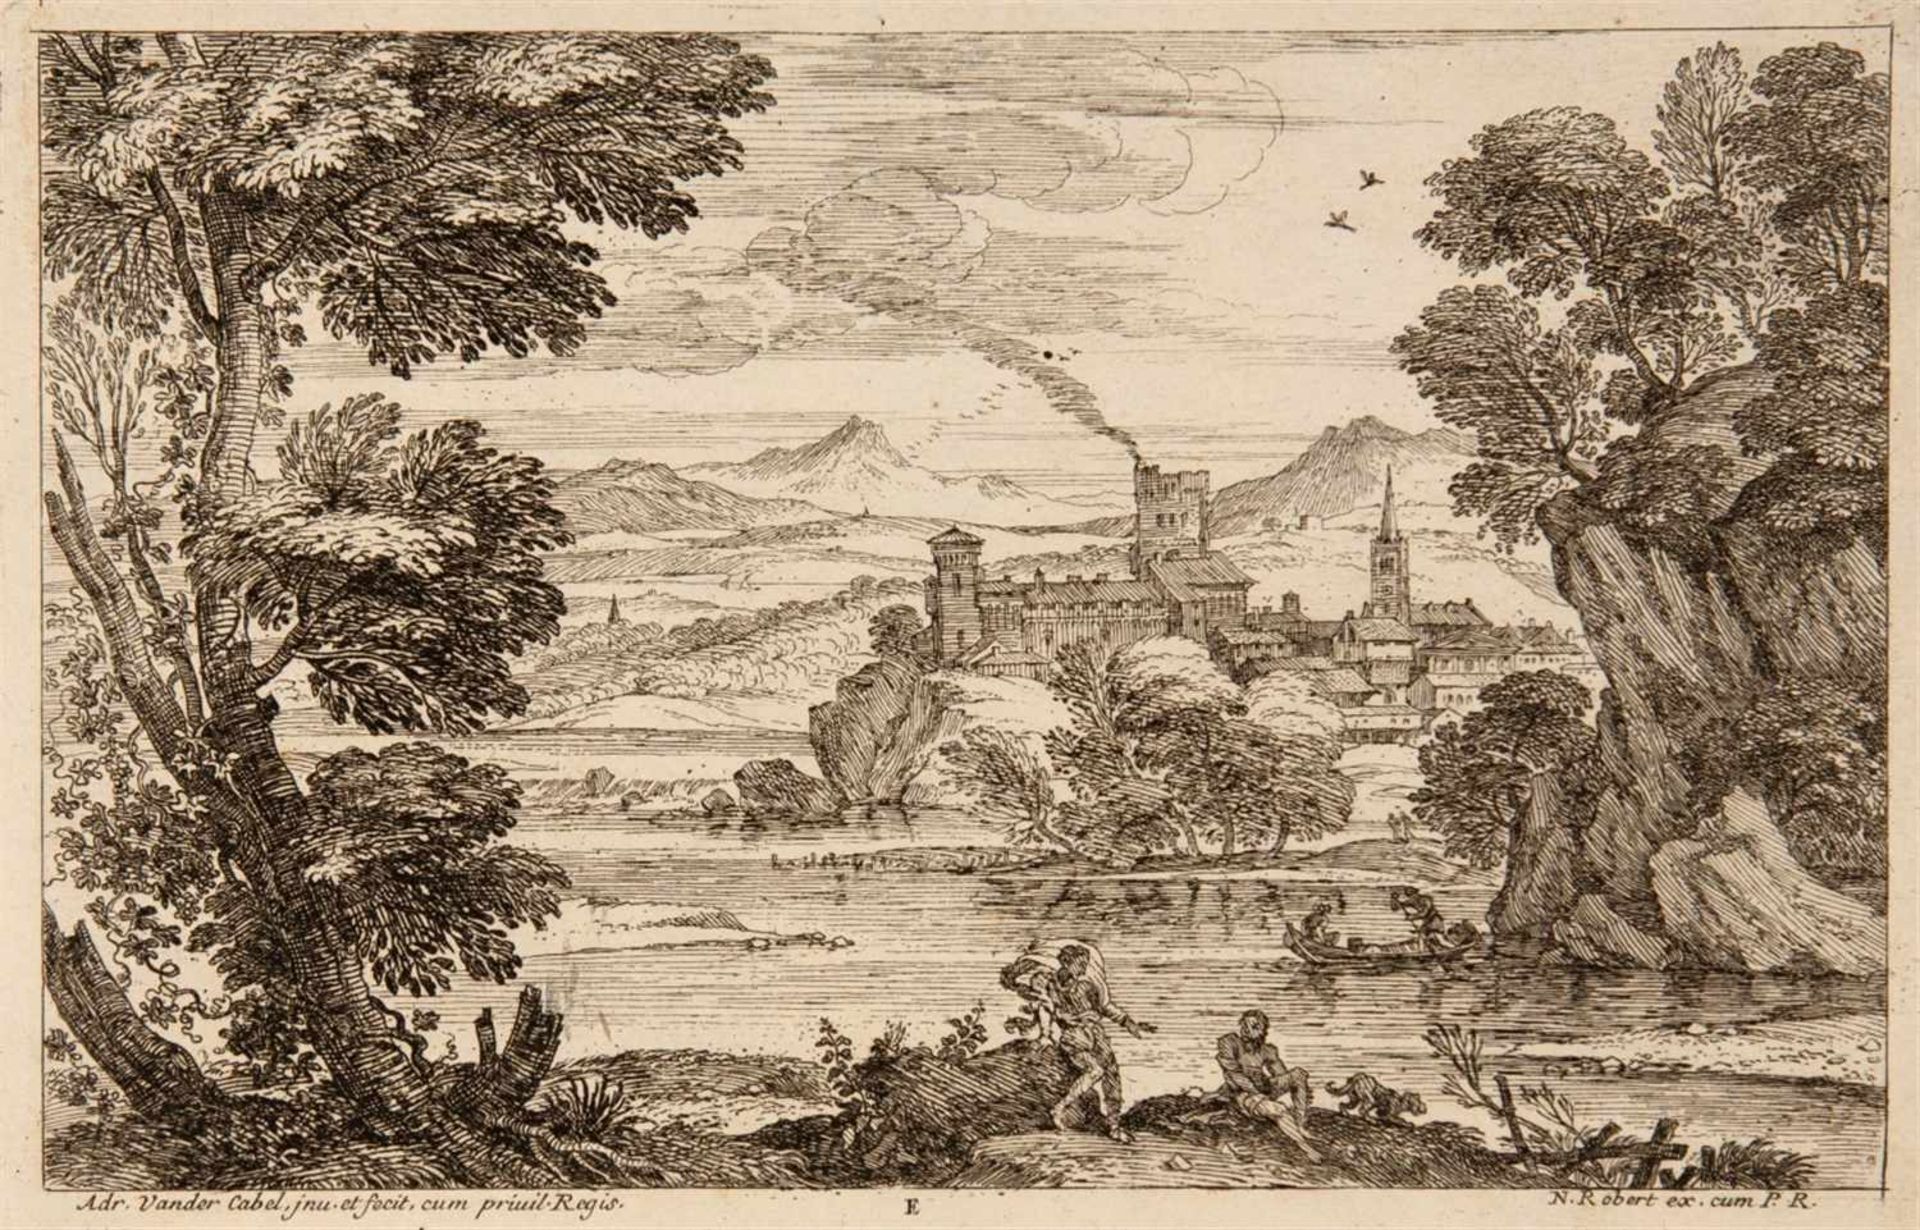 ADRIAN VAN DER CABELRyswyk 1631 - 1705 Lyon Segonds Livre de Paisages du Sr. Vendrecable. Folge - Image 5 of 6